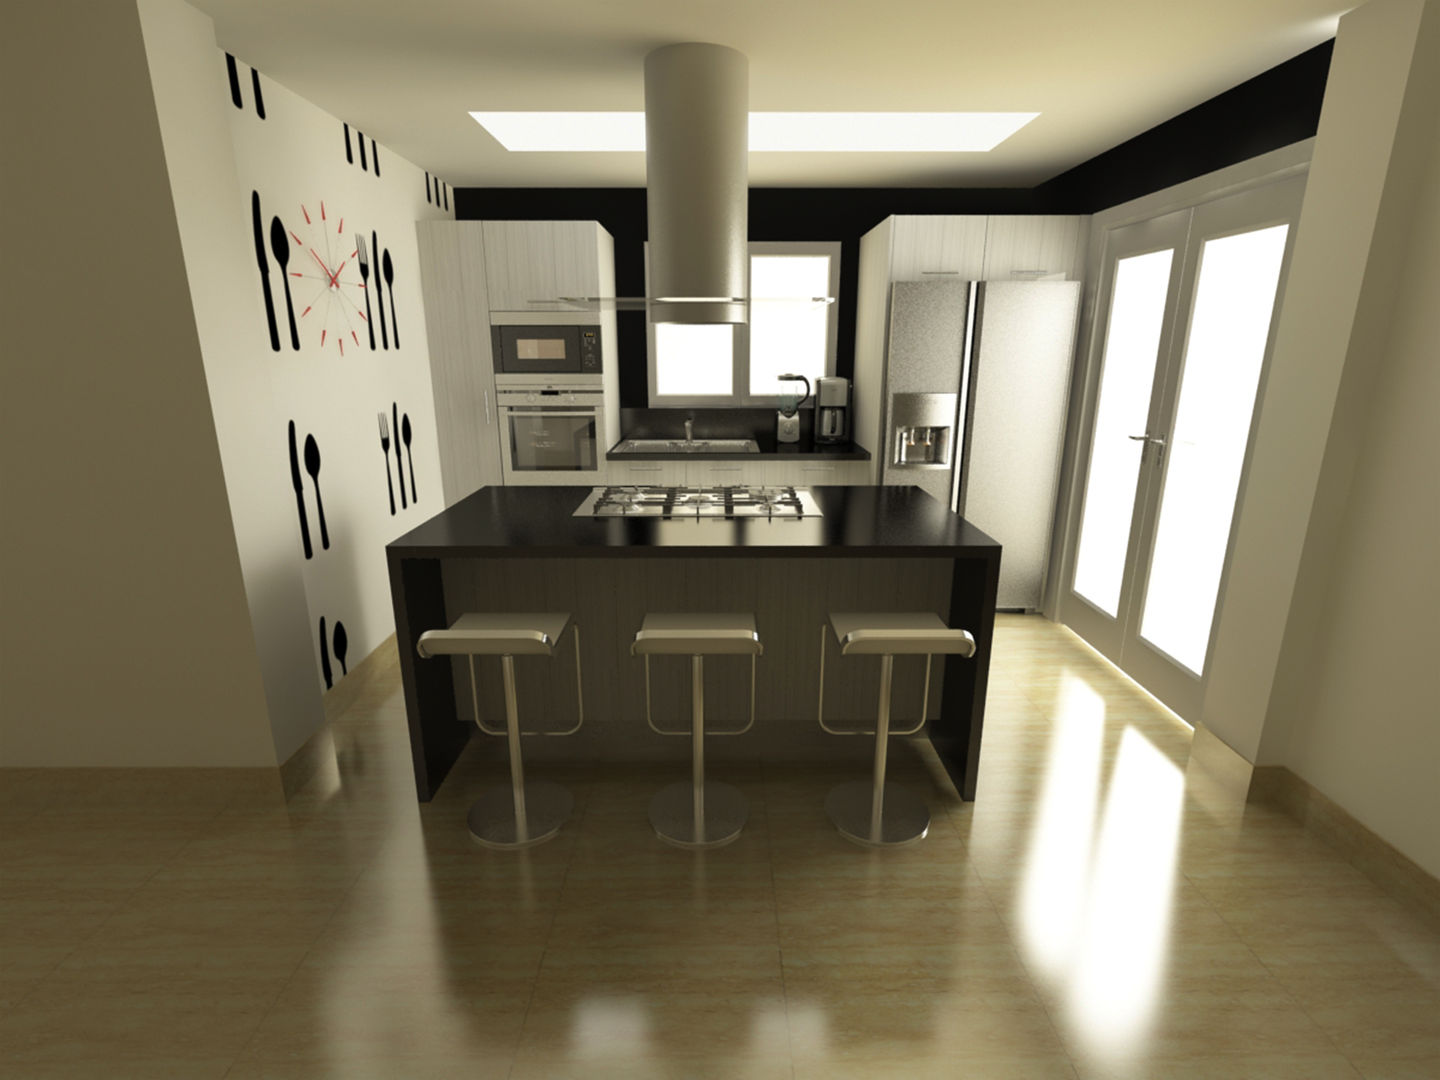 Cocina Quinta Chabella, OPFA Diseños y Arquitectura OPFA Diseños y Arquitectura Minimalist kitchen